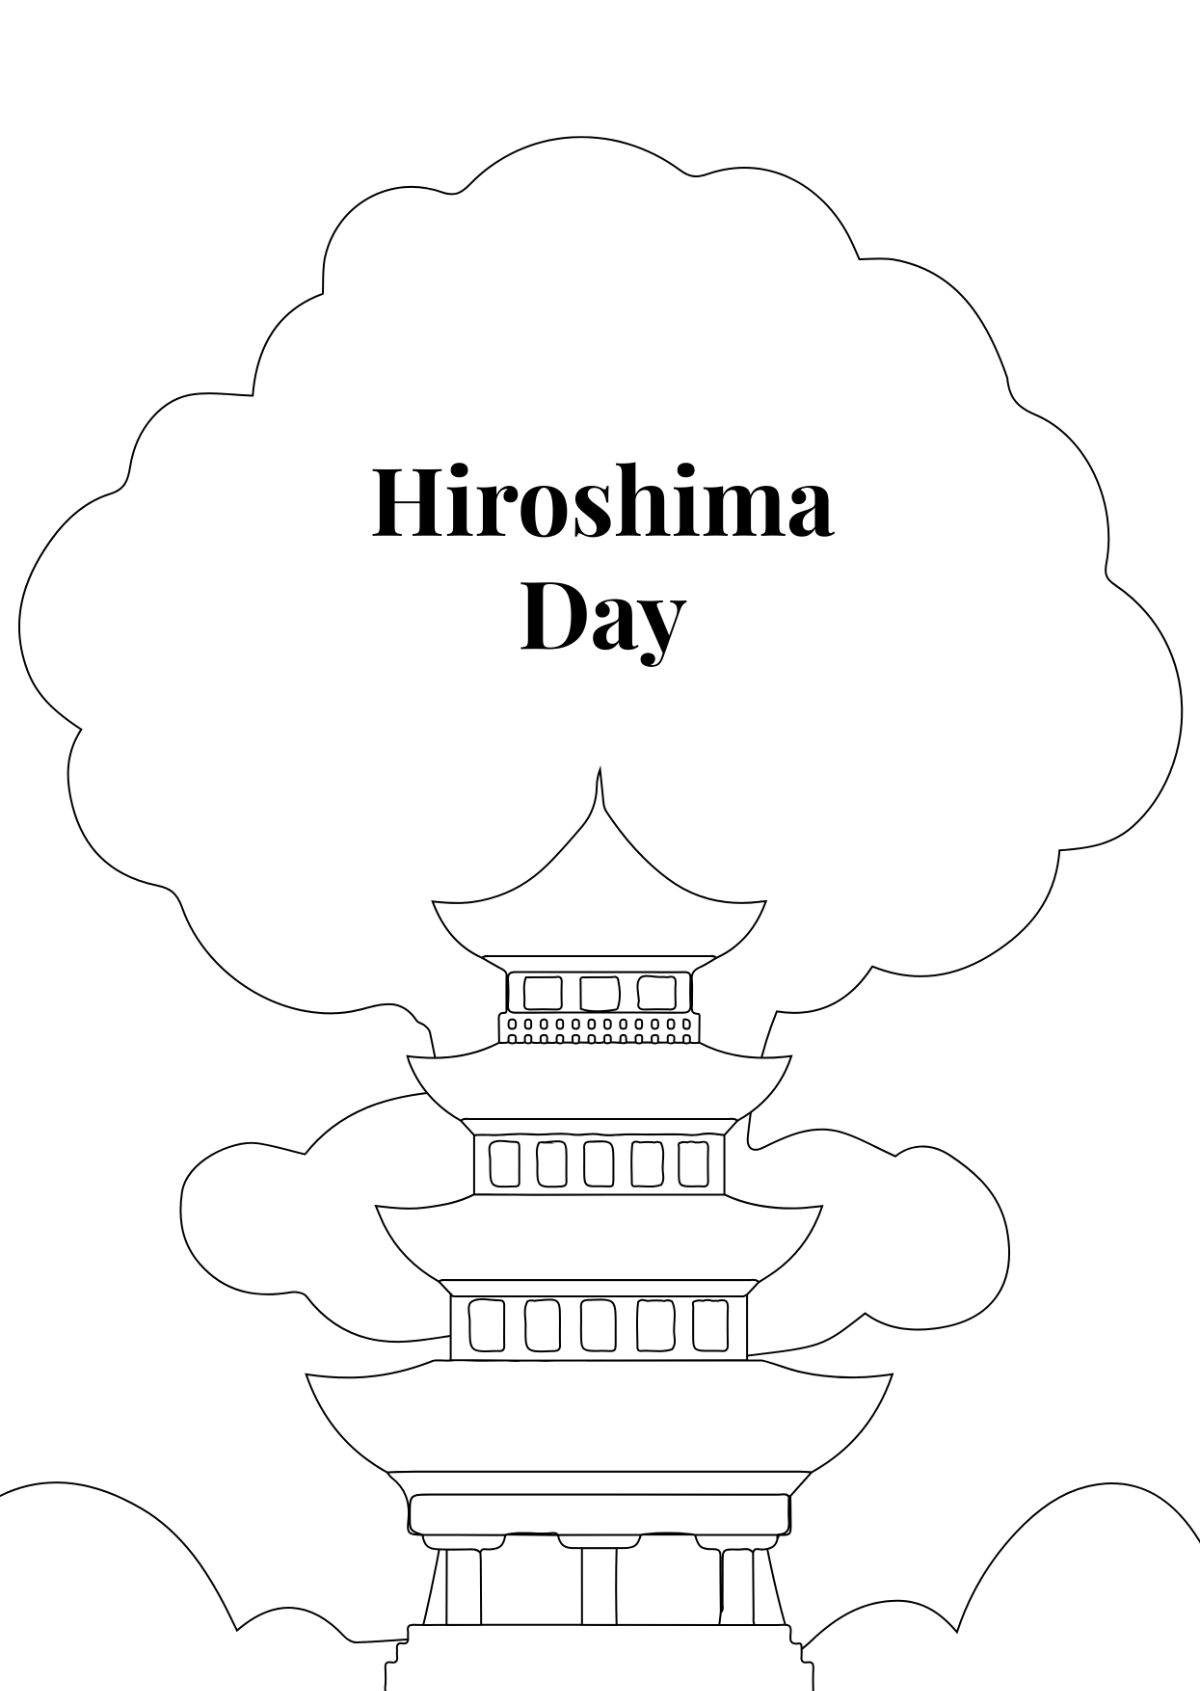 Hiroshima Day Drawing